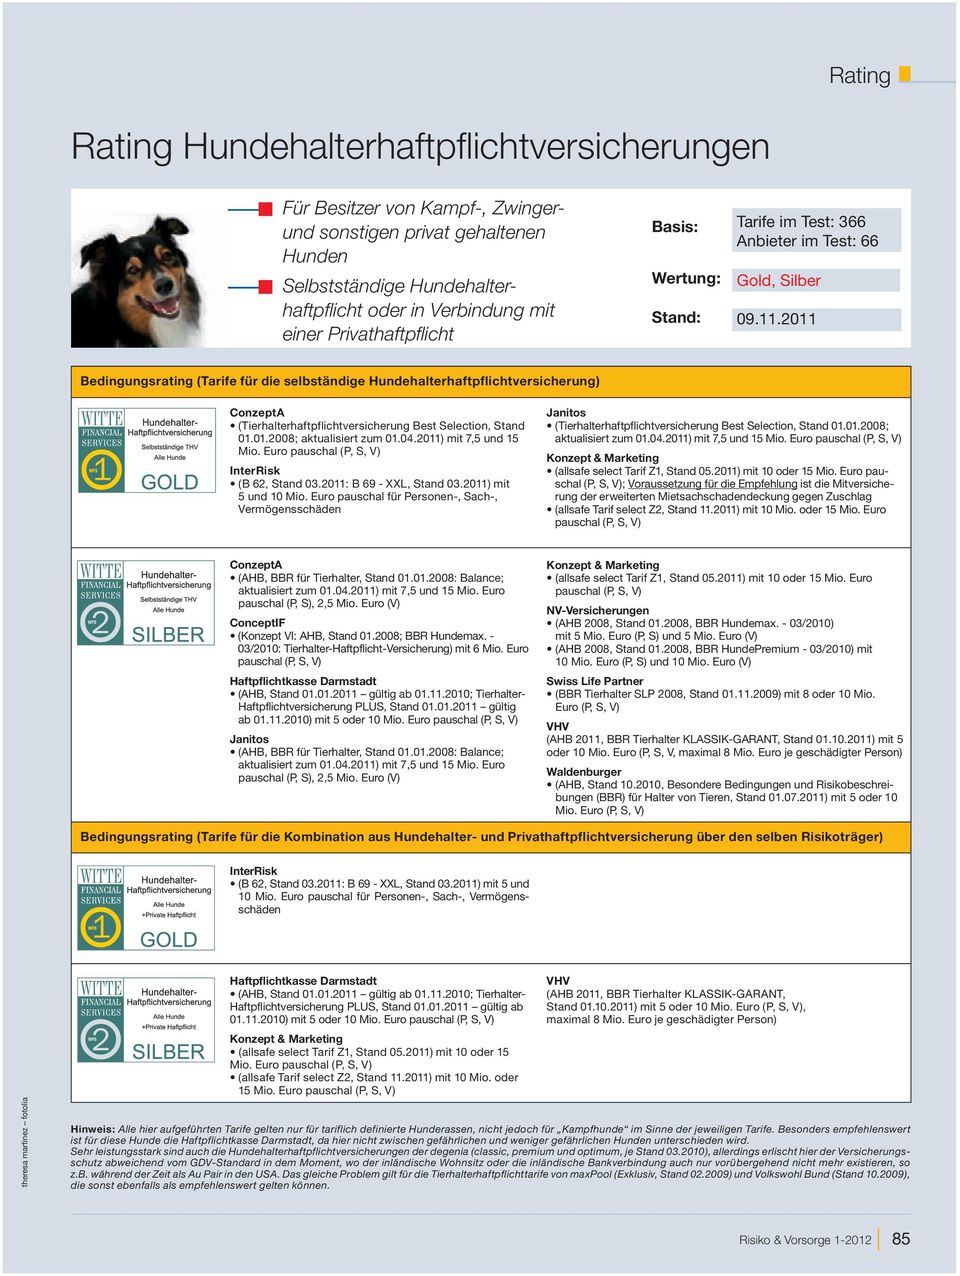 2011 Bedingungsrating (Tarife für die selbständige Hundehalterhaftpflichtversicherung) ConzeptA (Tierhalterhaftpflichtversicherung Best Selection, Stand 01.01.2008; aktualisiert zum 01.04.